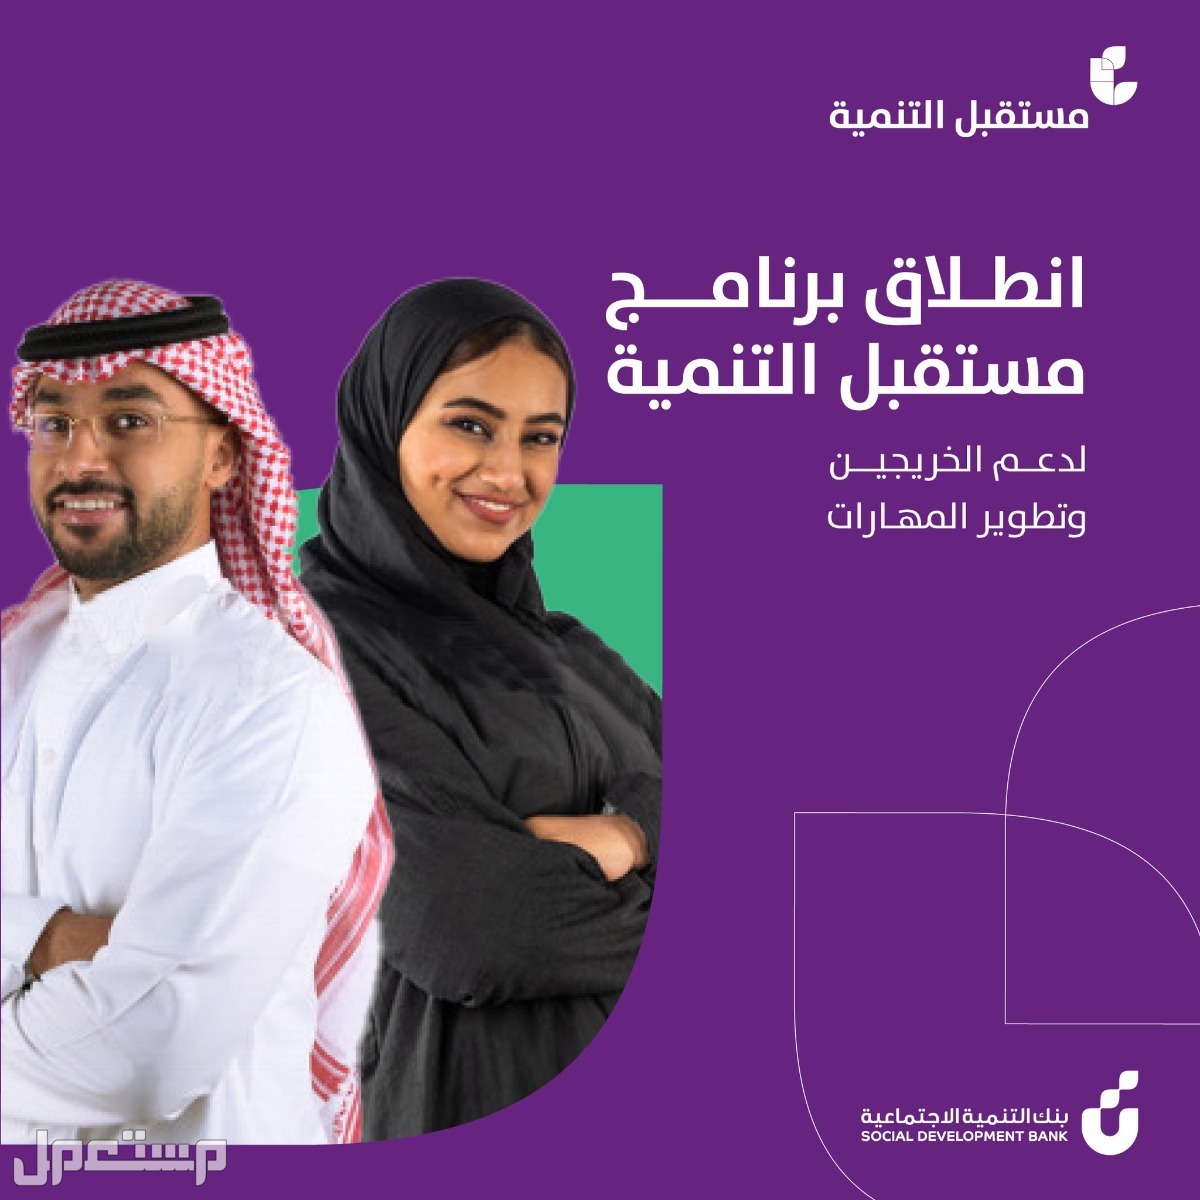 كيفية التقديم على برنامج مستقبل التنمية للخريجين في بنك التنمية الاجتماعية في الكويت التقديم على برنامج مستقبل التنمية للخريجين